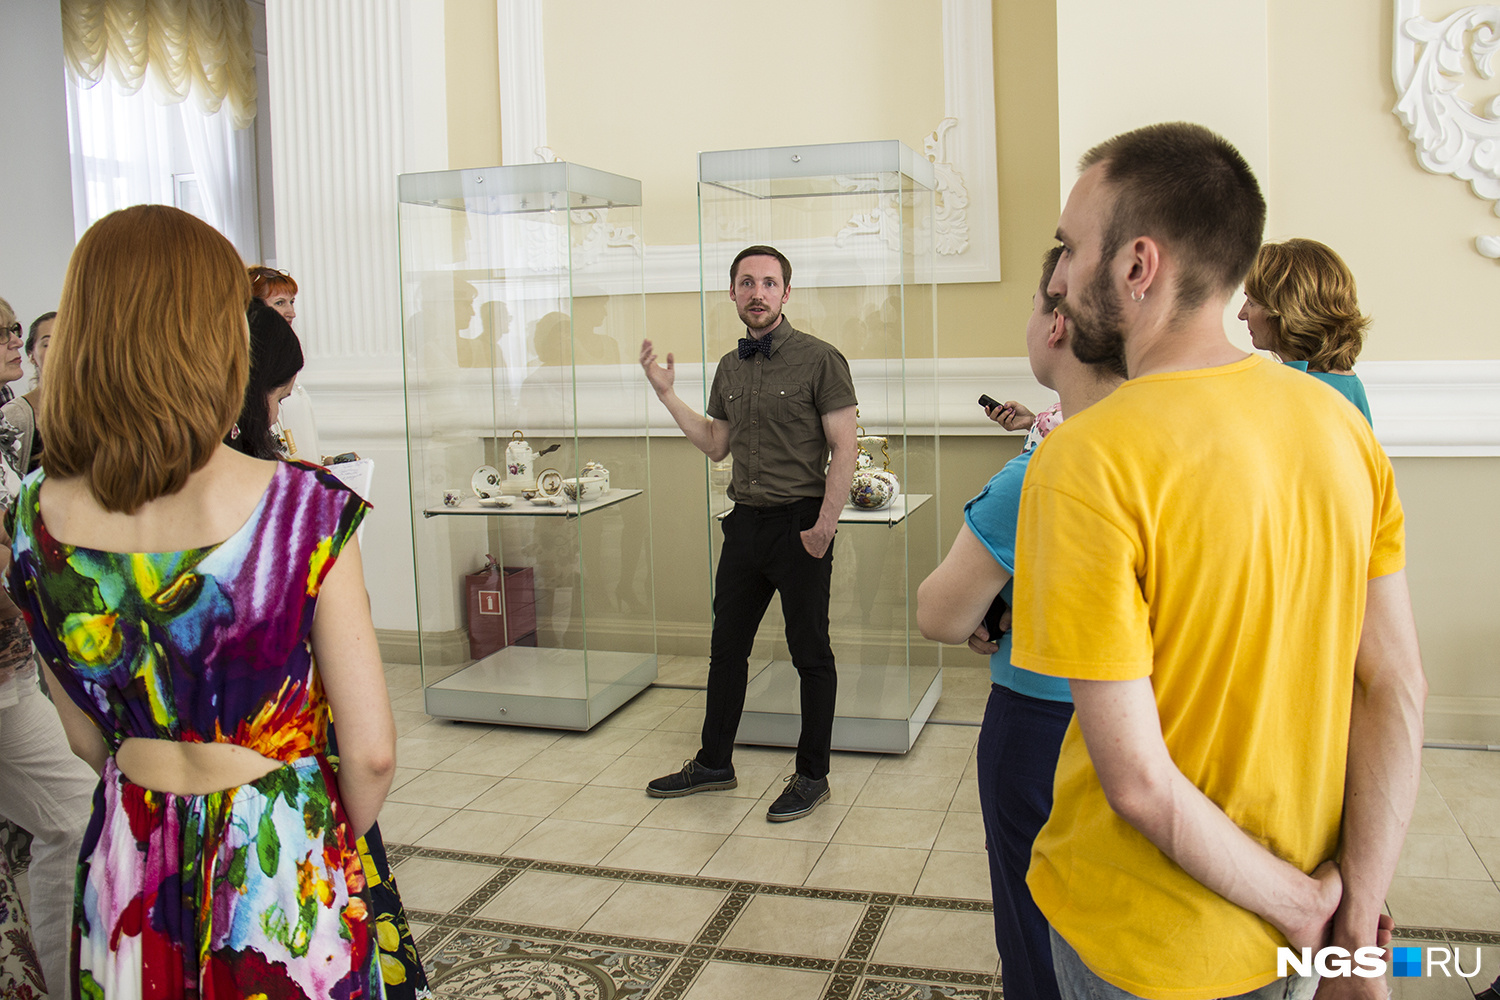 На открытии выставки экскурсию провел сотрудник фонда керамики и стекла Омского областного музея изобразительных искусств Иван Гольский